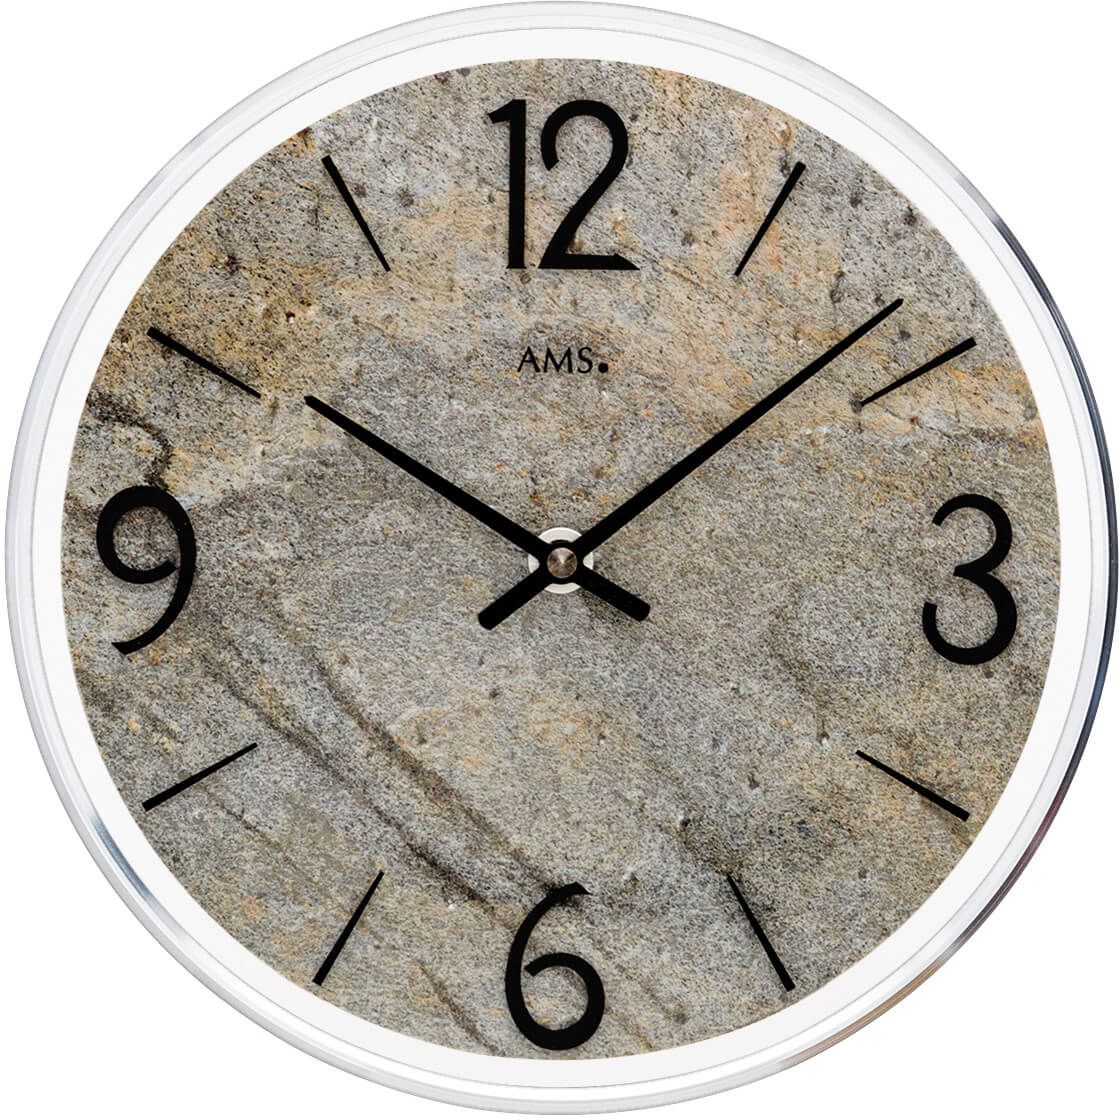 Nástěnné hodiny velké, kulaté ams 9633 přírodní kámen šedá